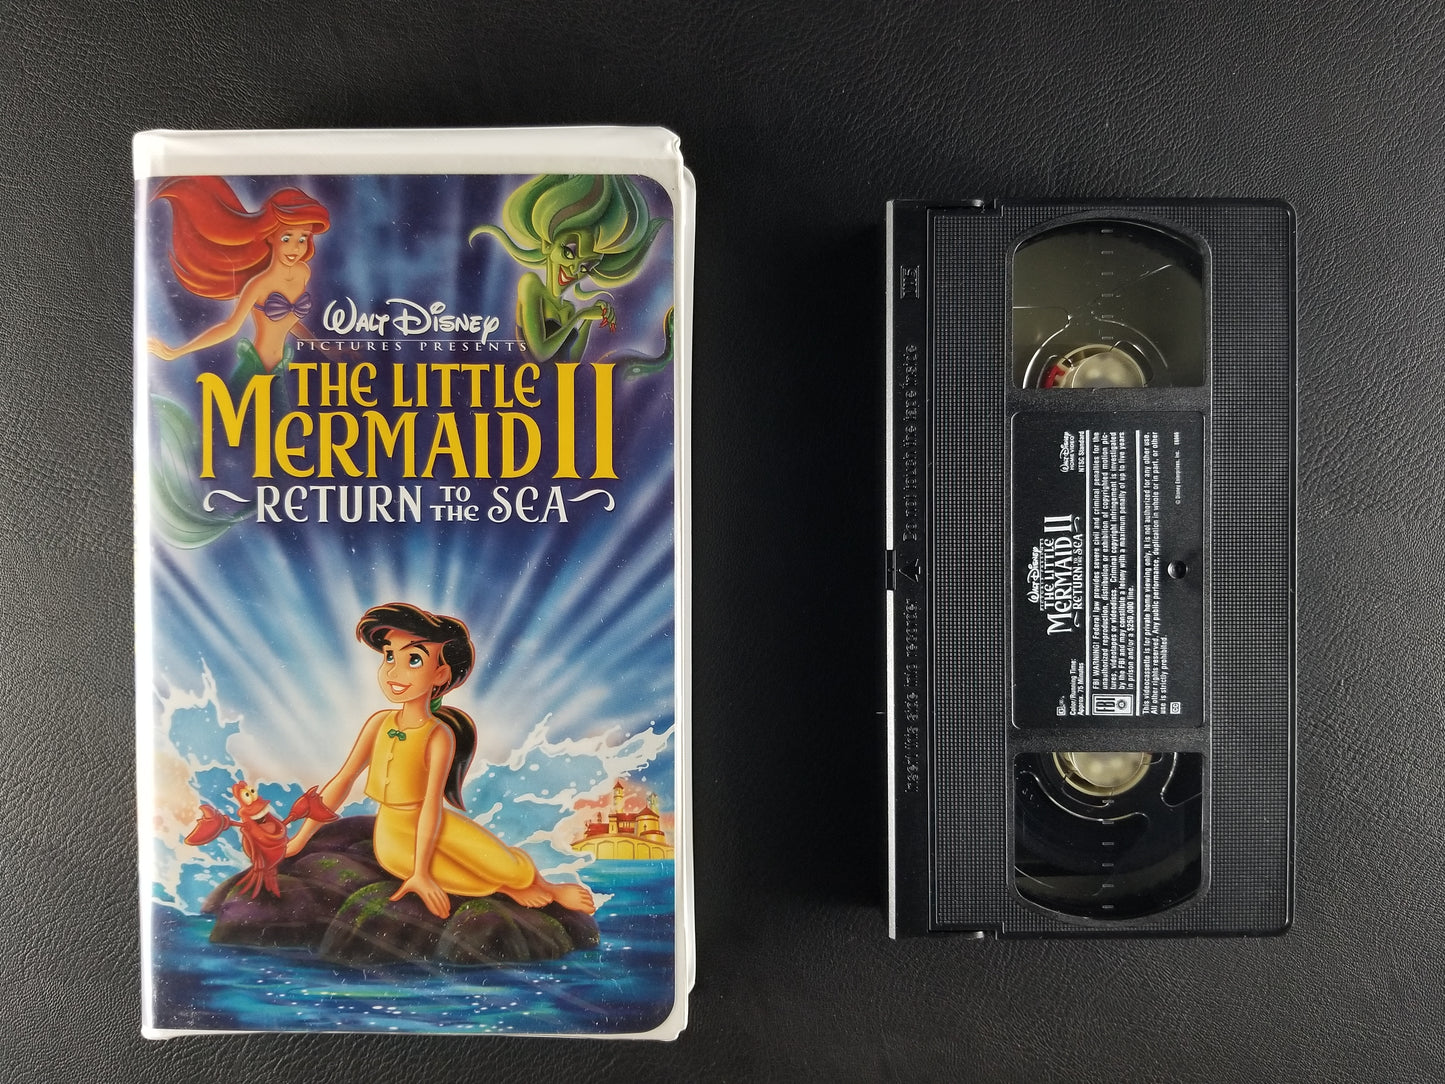 The Little Mermaid II: Return to the Sea (2000, VHS)